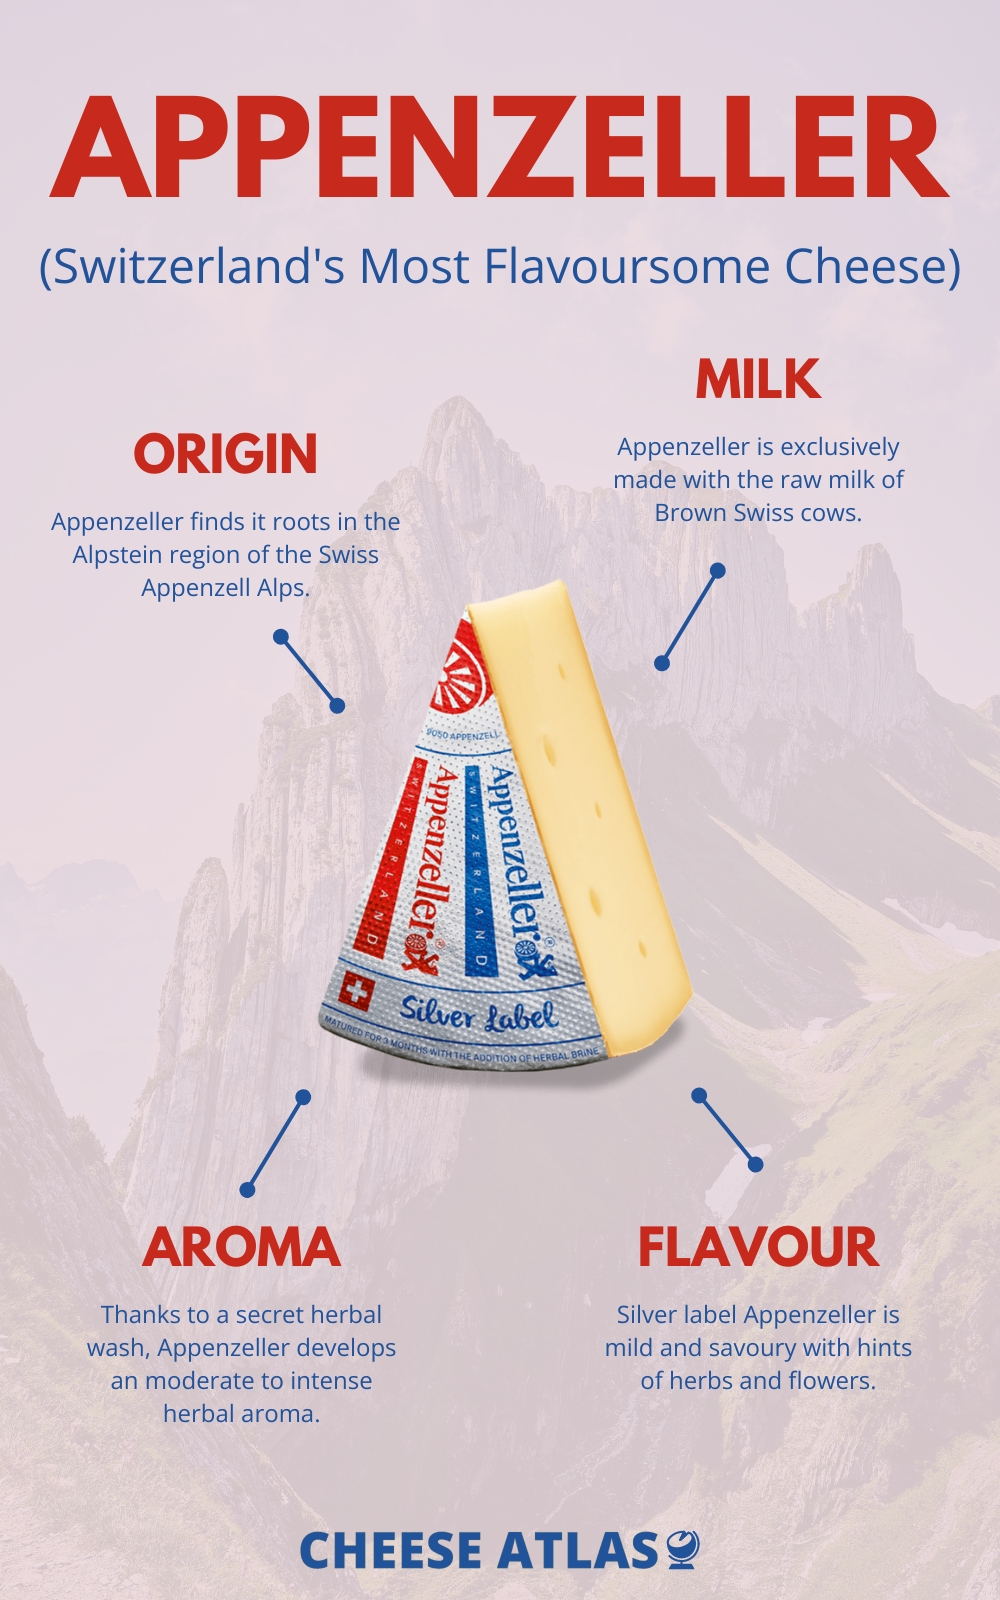 Appenzeller Switzerland's Most Flavoursome Cheese